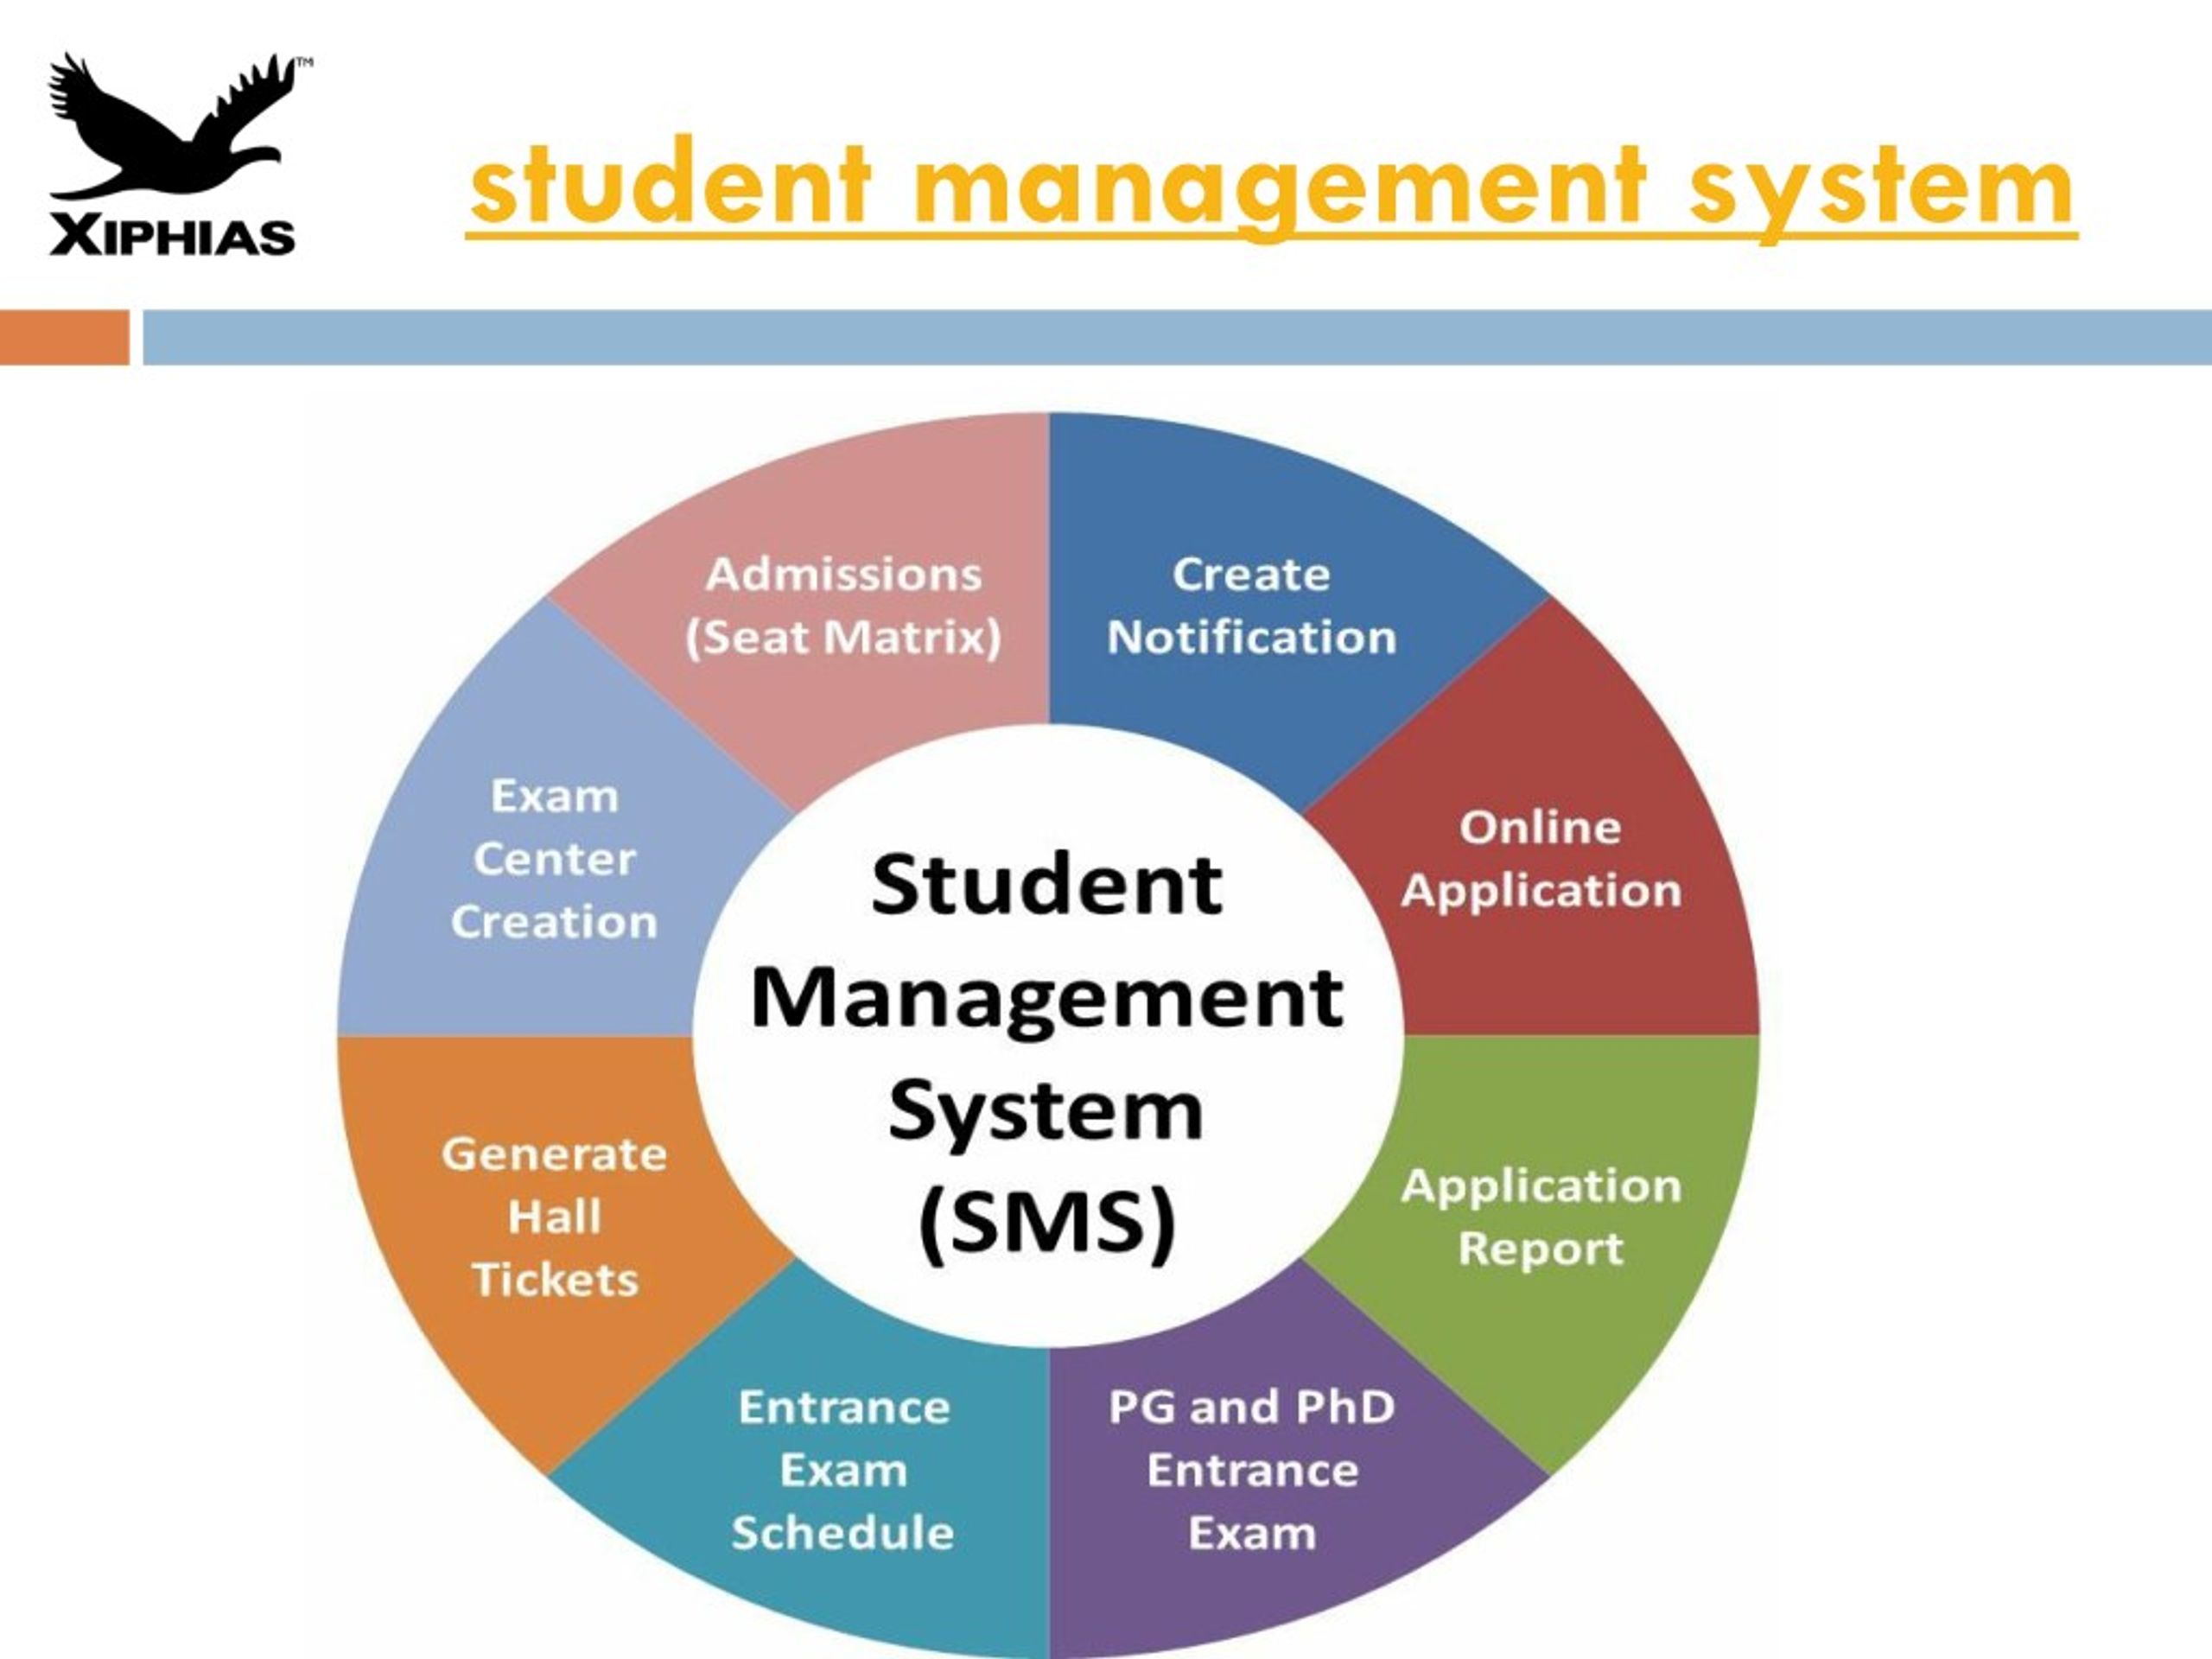 college management system presentation